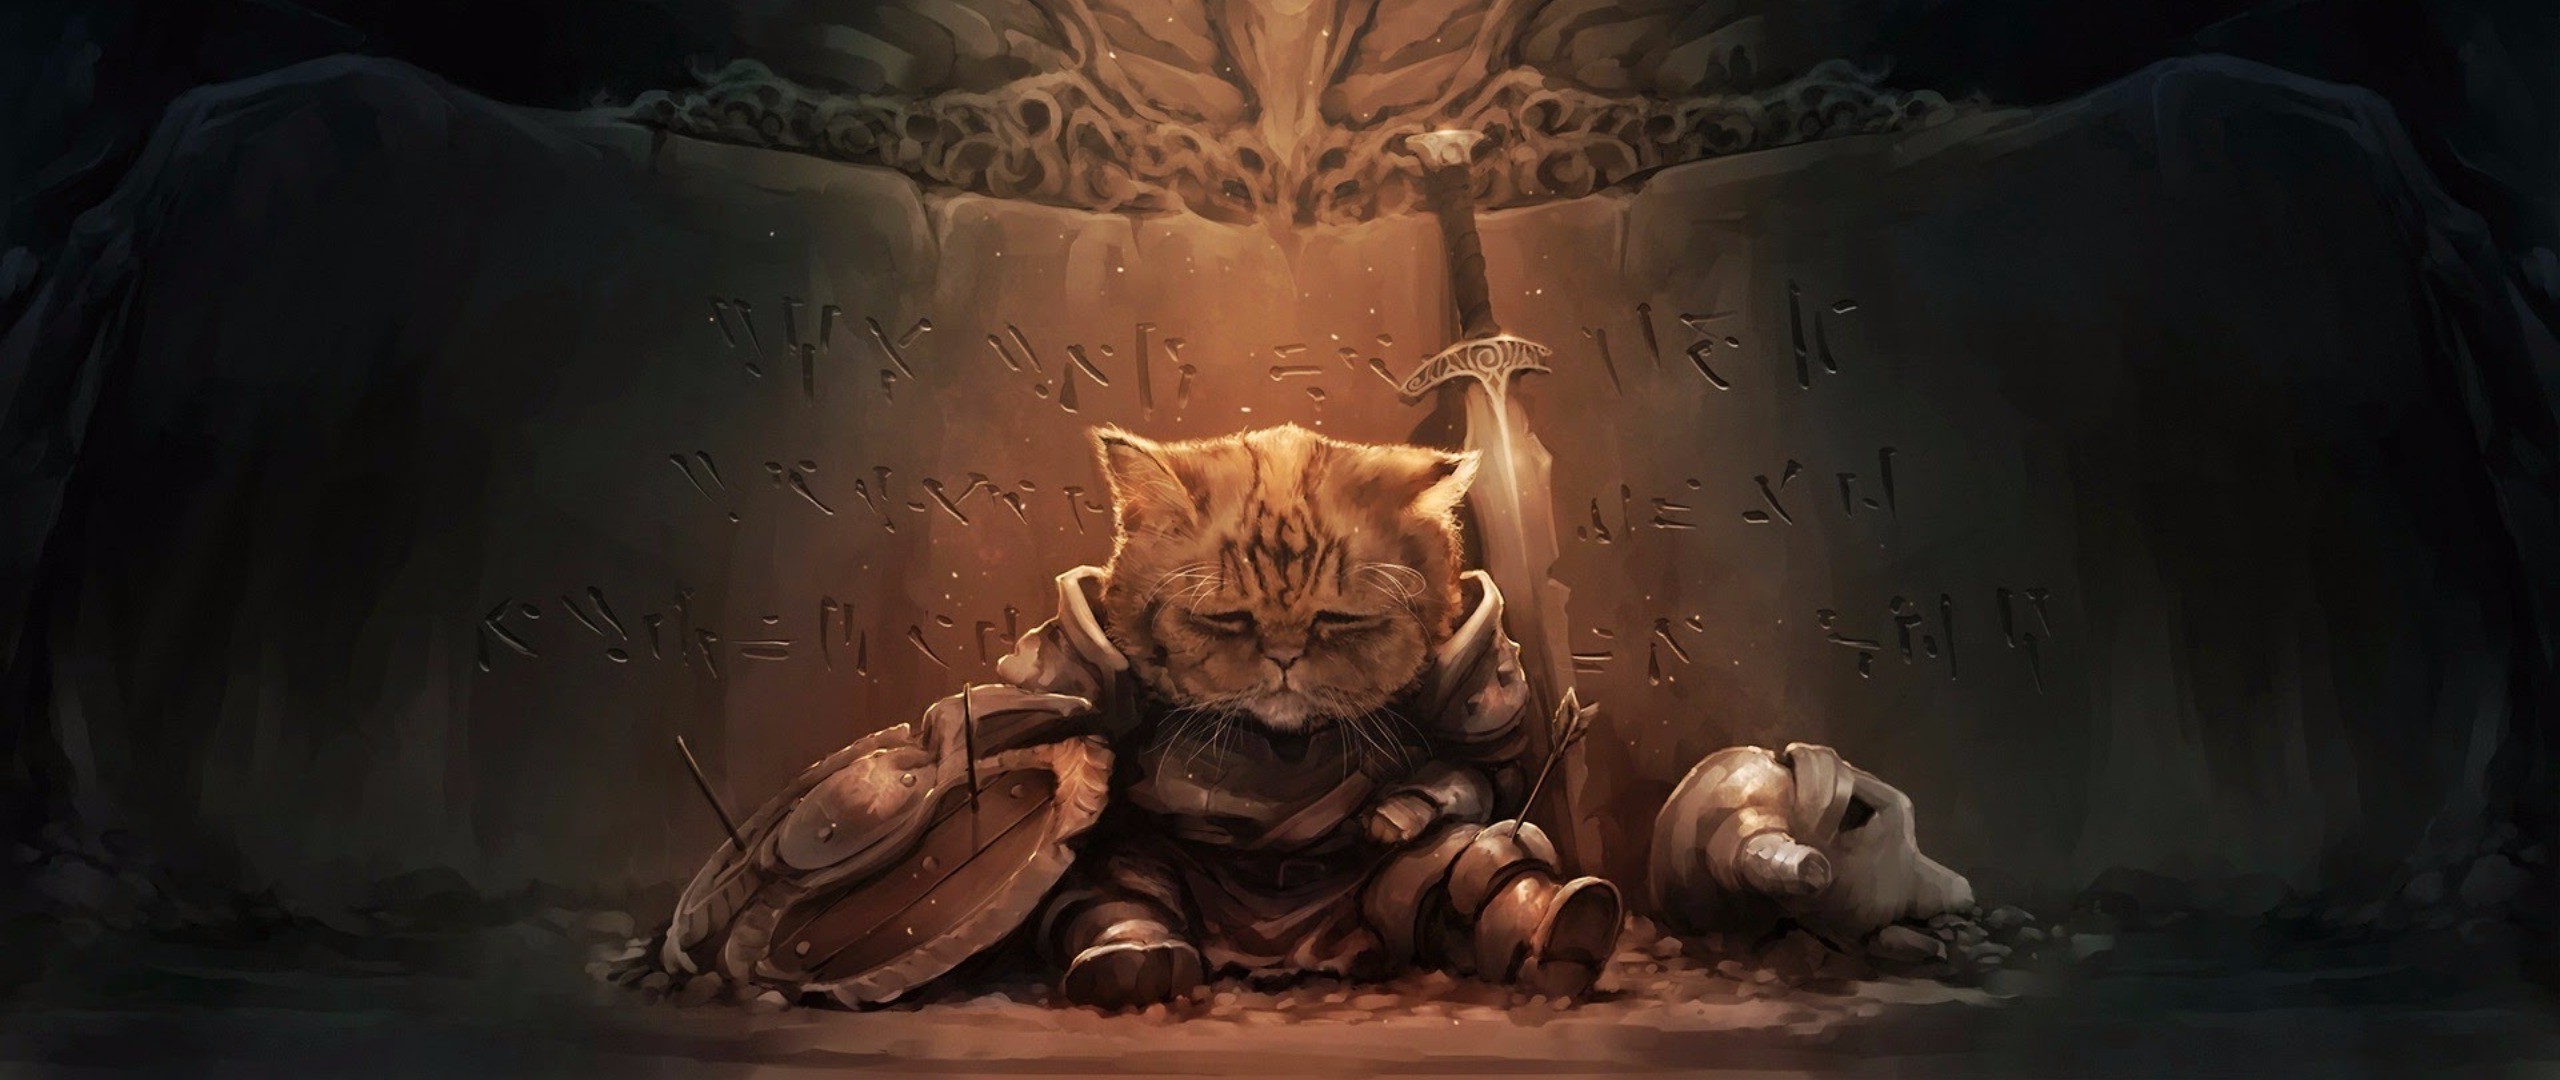 Cat The Elder Scrolls V Skyrim Wallpapers Hd Desktop And Mobile Backgrounds